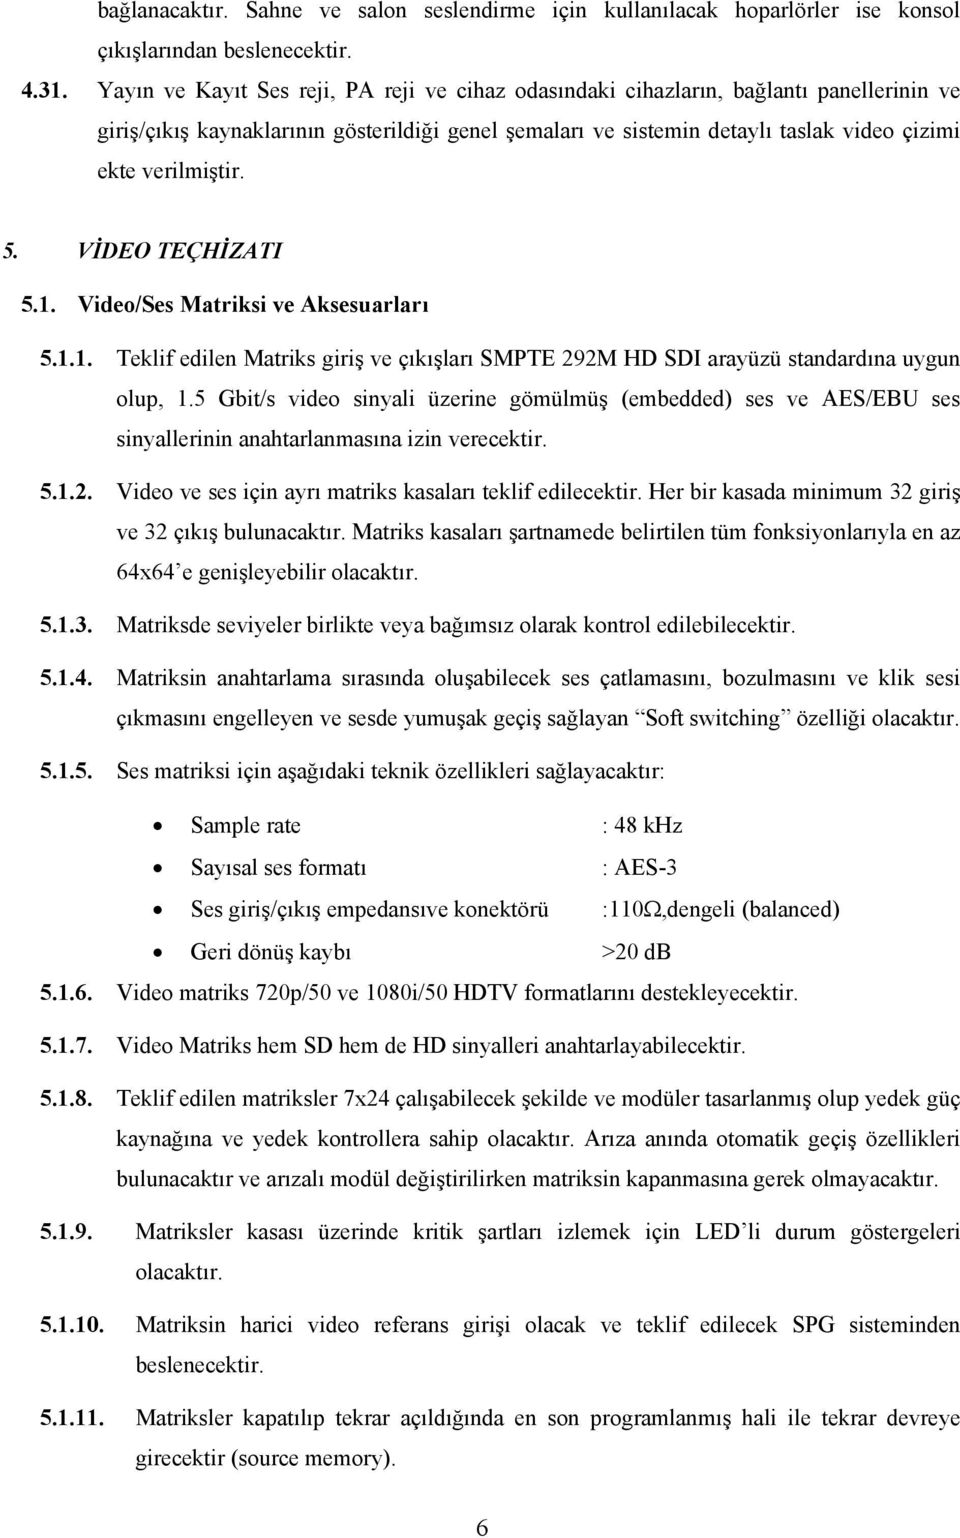 verilmiştir. 5. VİDEO TEÇHİZATI 5.1. Video/Ses Matriksi ve Aksesuarları 5.1.1. Teklif edilen Matriks giriş ve çıkışları SMPTE 292M HD SDI arayüzü standardına uygun olup, 1.